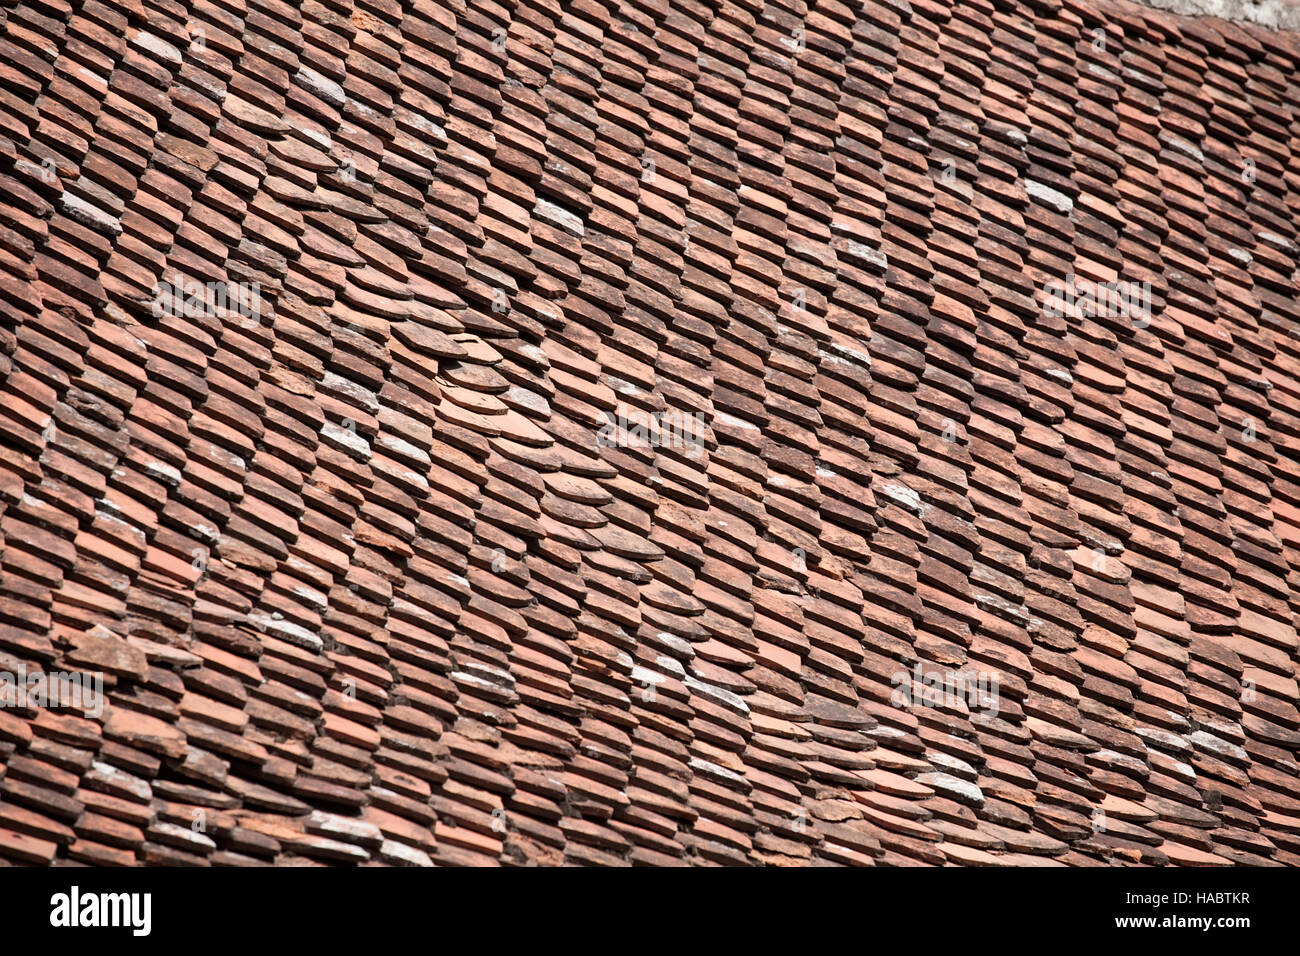 El techo de tejas de arcilla roja textura patrón closeup Foto de stock